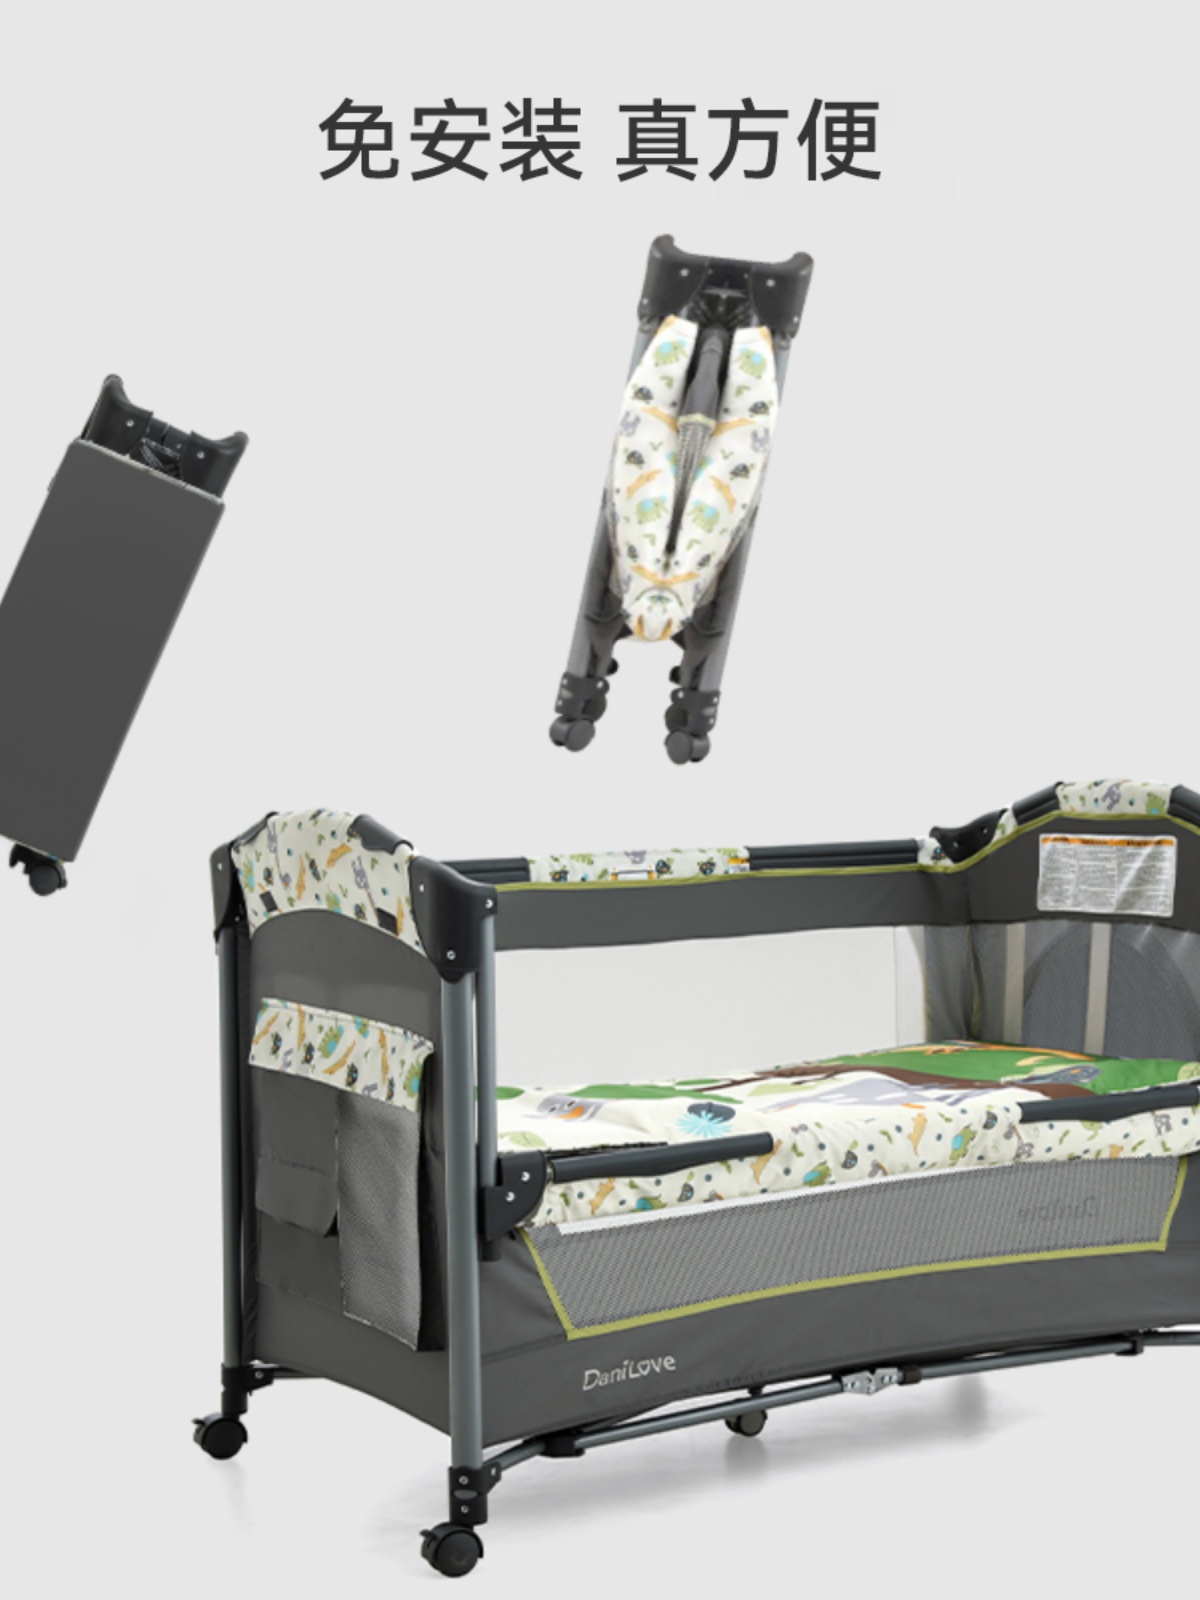 多功能嬰兒床 可摺疊移動 便攜搖籃床 嬰兒床新生兒拼接大床 (7.6折)